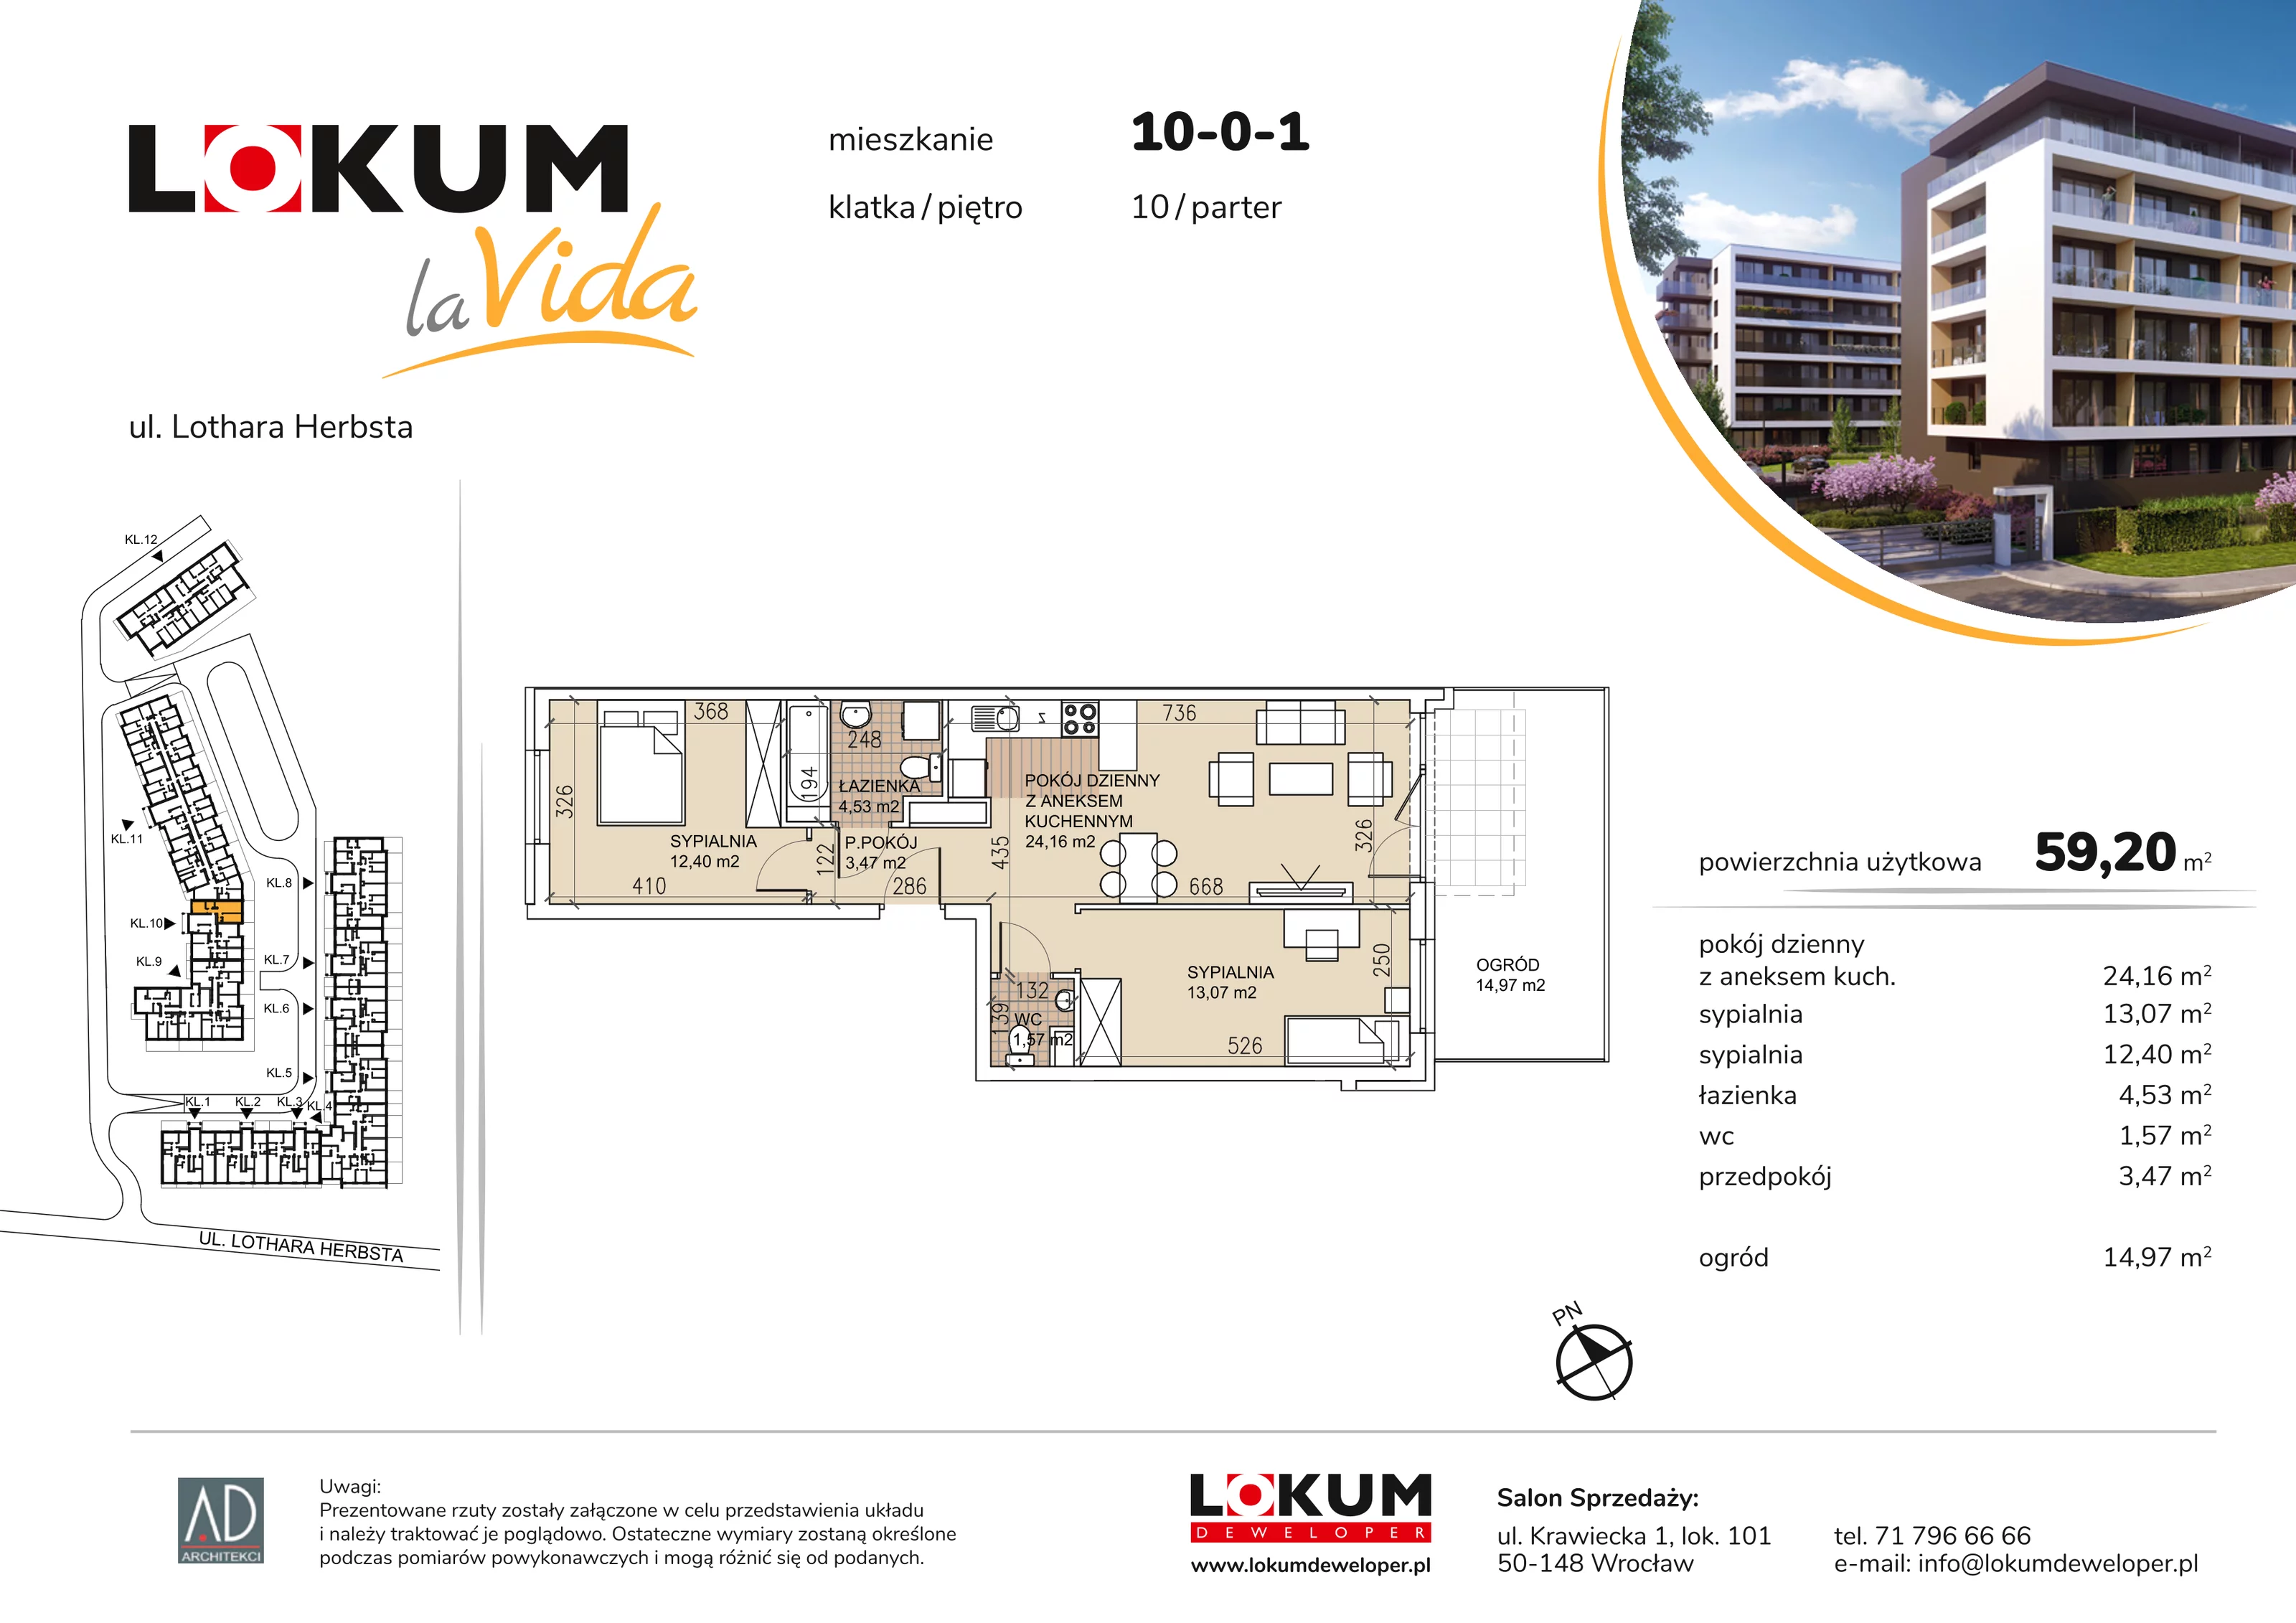 Mieszkanie 59,20 m², parter, oferta nr 10-0-1, Lokum la Vida, Wrocław, Sołtysowice, ul. Lothara Herbsta